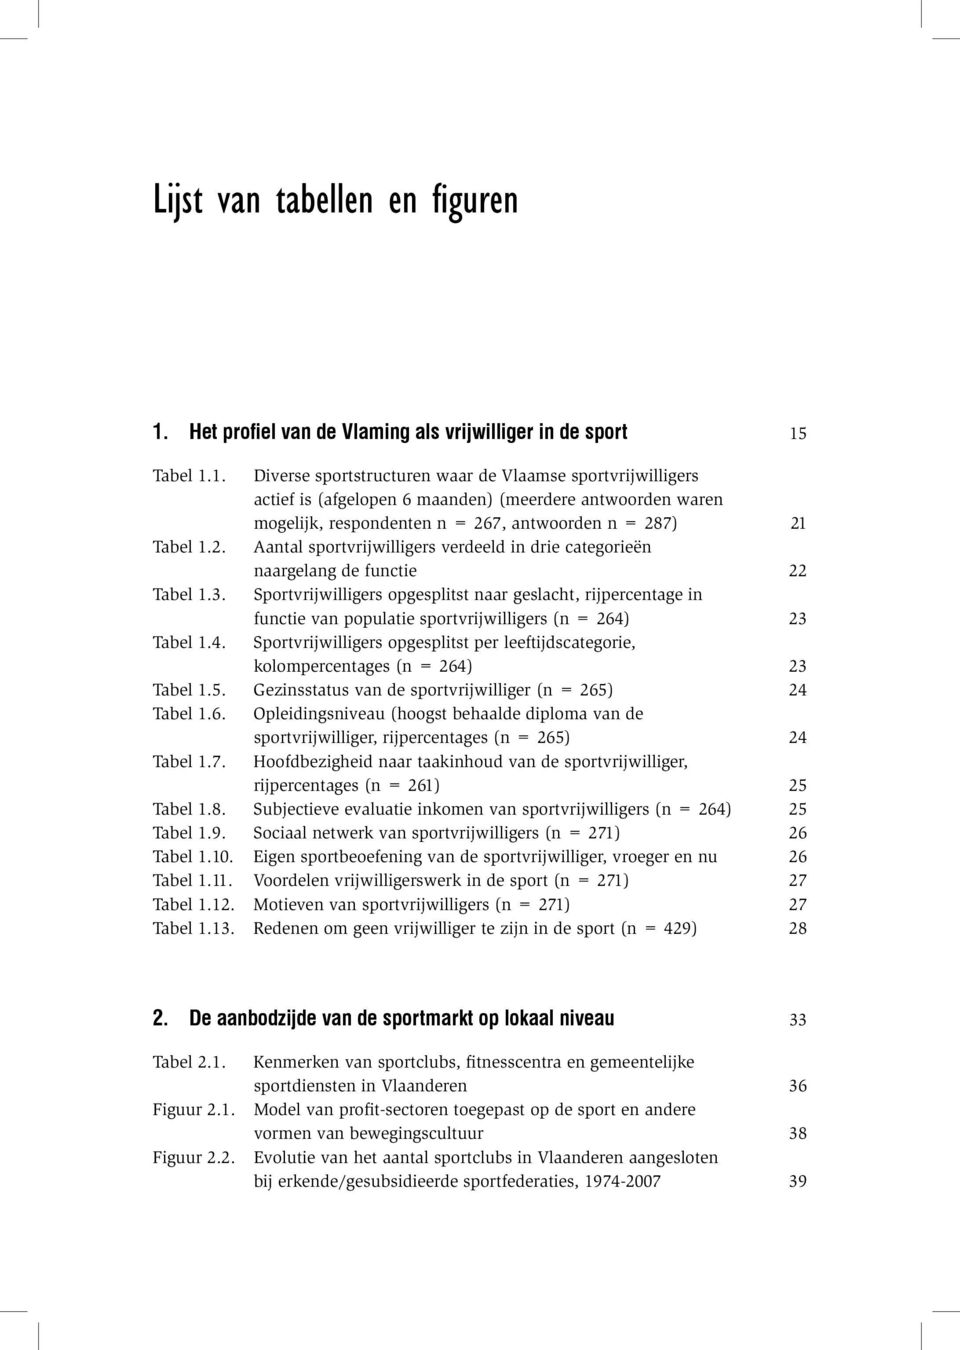 Tabel 1.1. Diverse sportstructuren waar de Vlaamse sportvrijwilligers actief is (afgelopen 6 maanden) (meerdere antwoorden waren mogelijk, respondenten n = 26